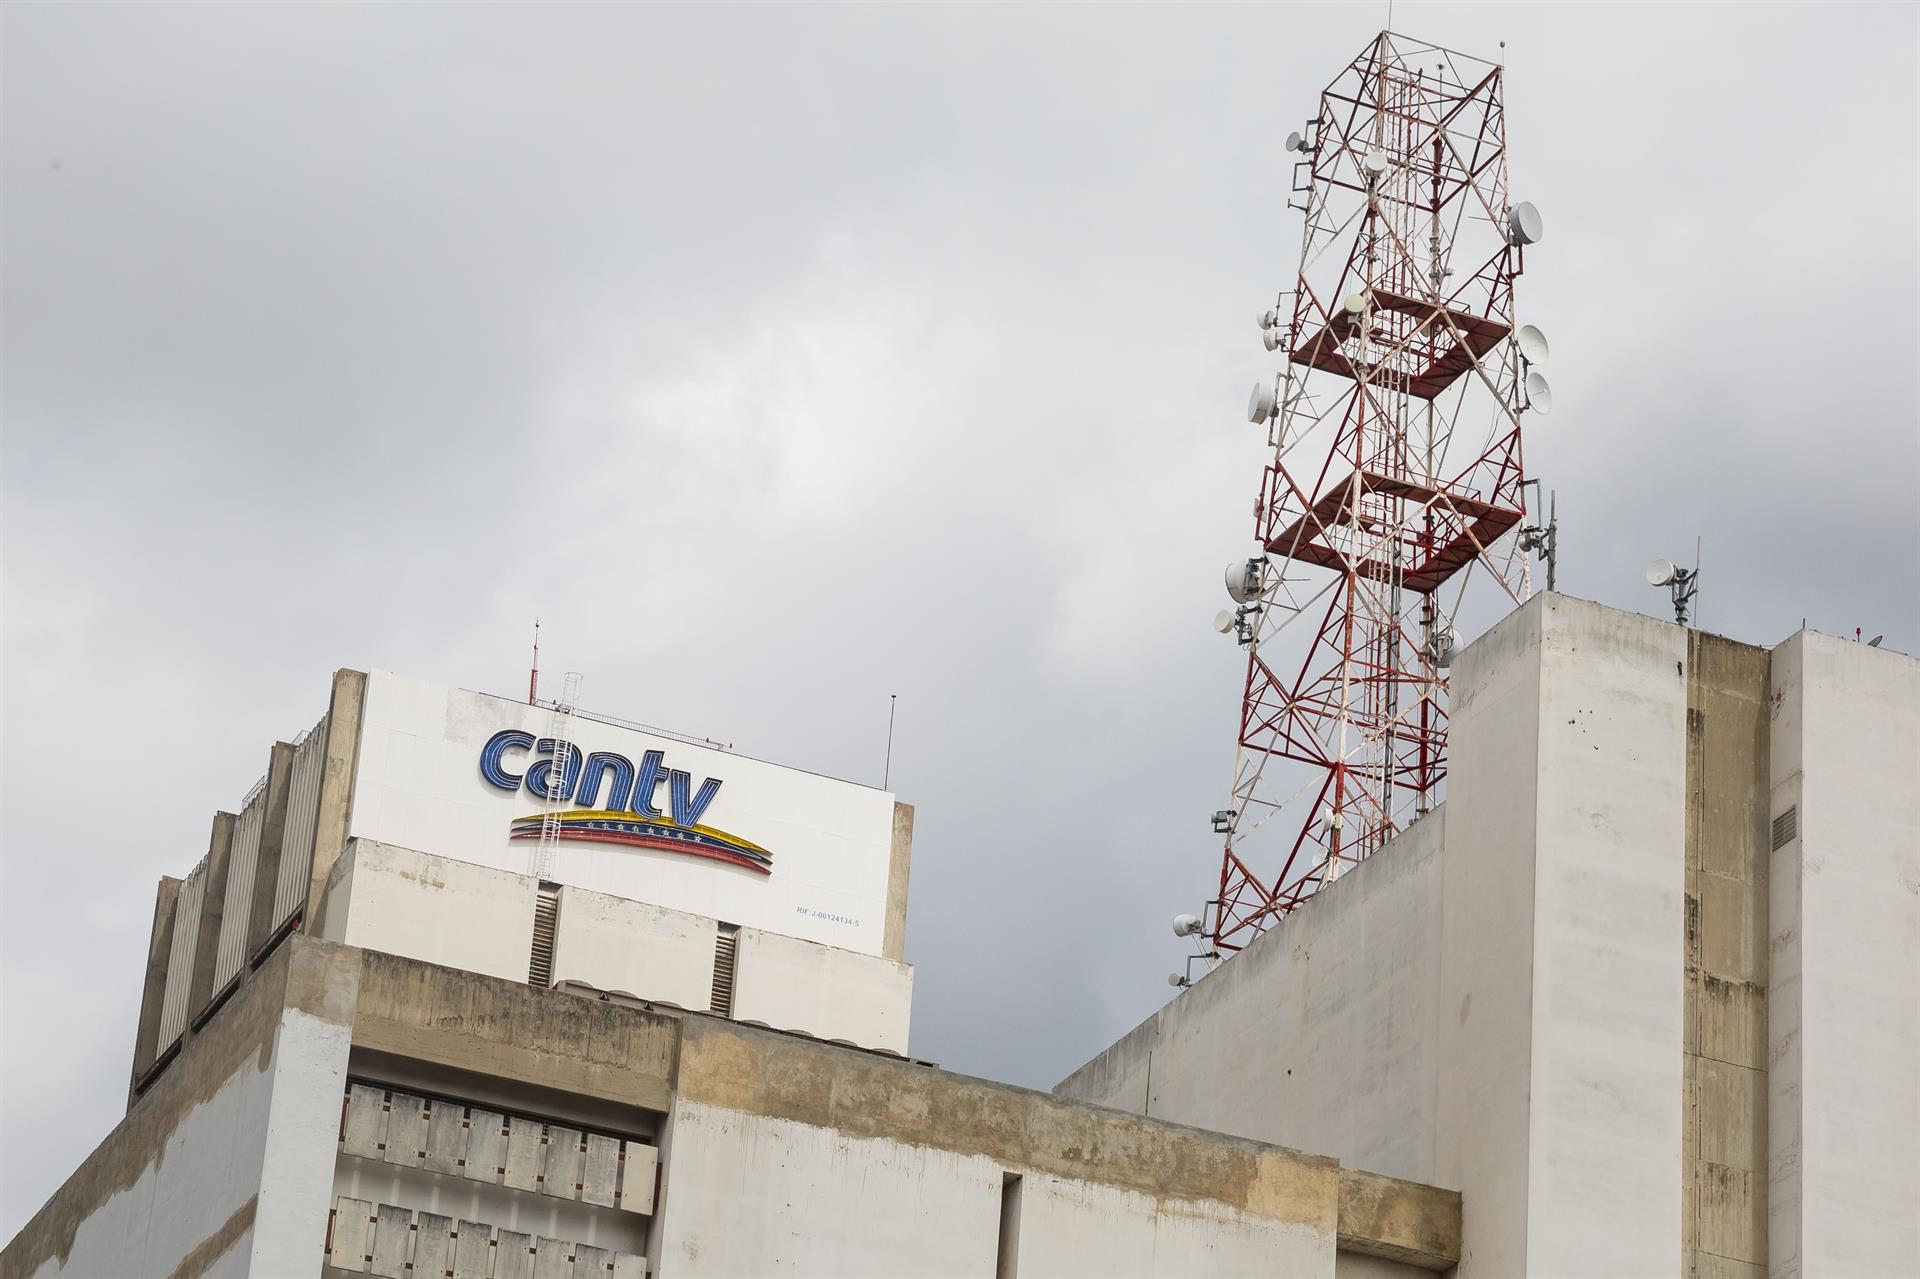 Cantv informó sobre fallas en los servicios de telecomunicaciones en el Oriente y Guayana